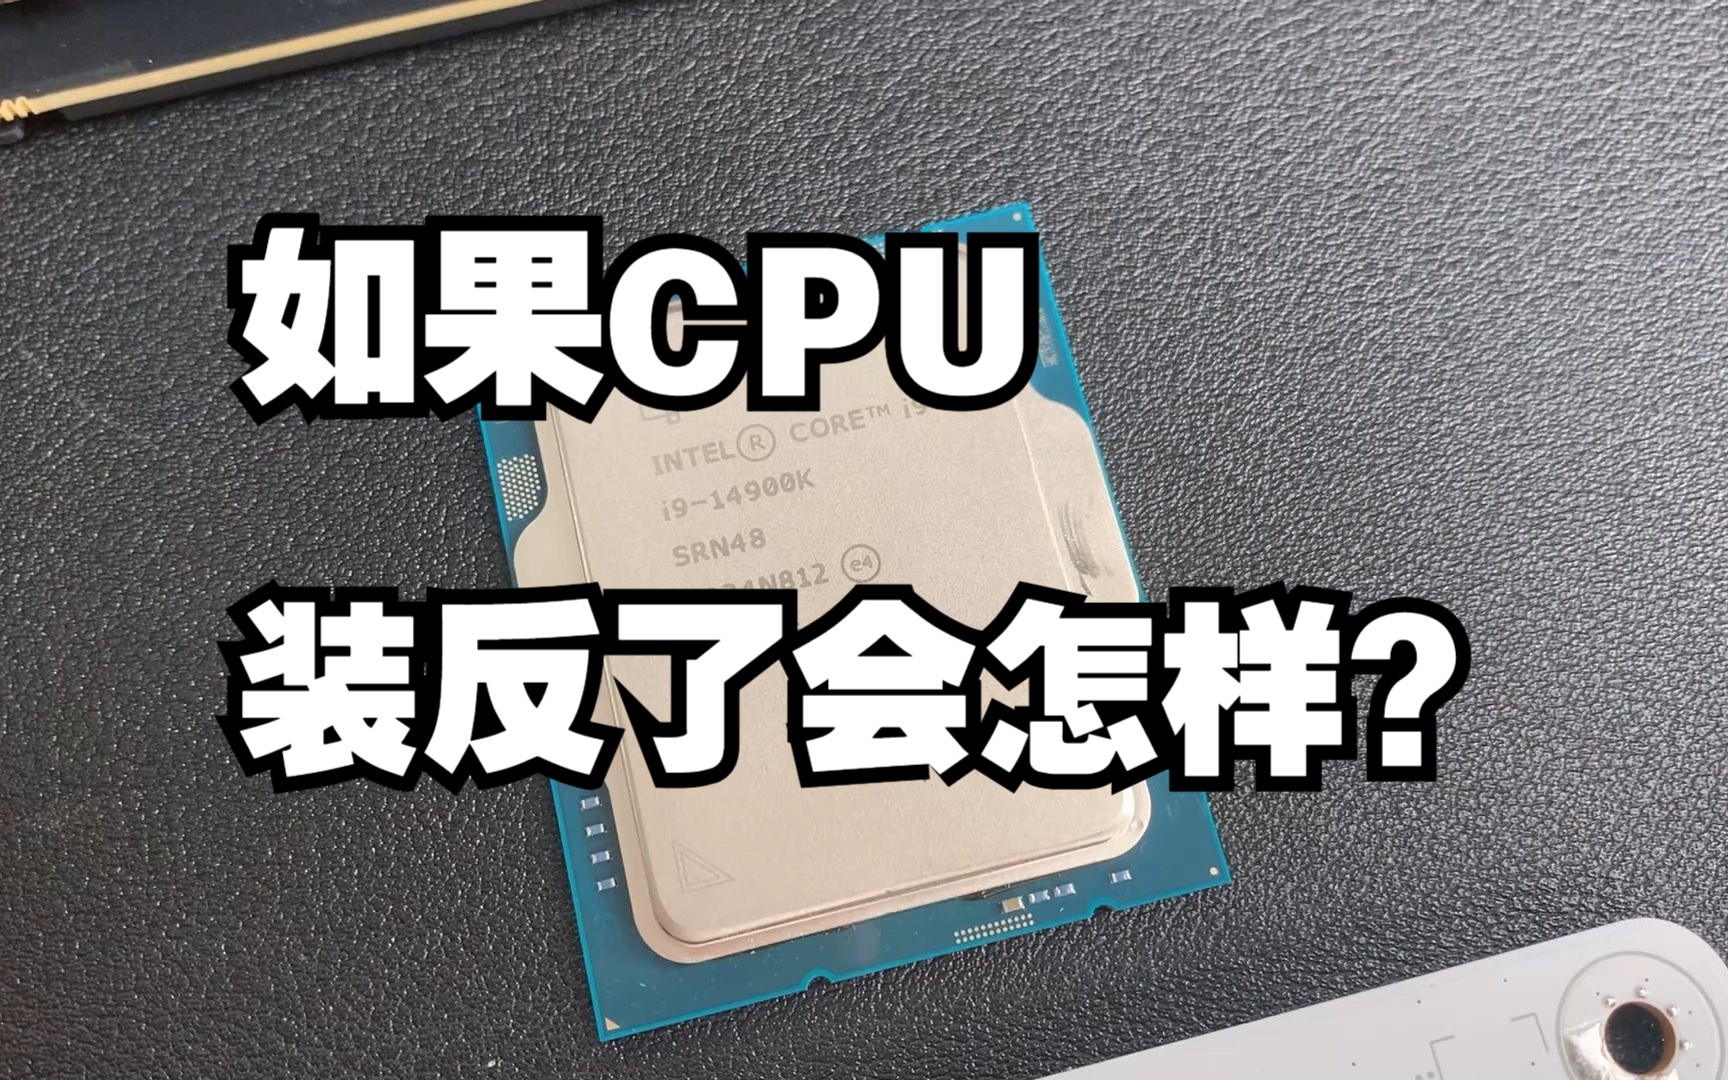 CPU装反了会有什么后果？教训啊